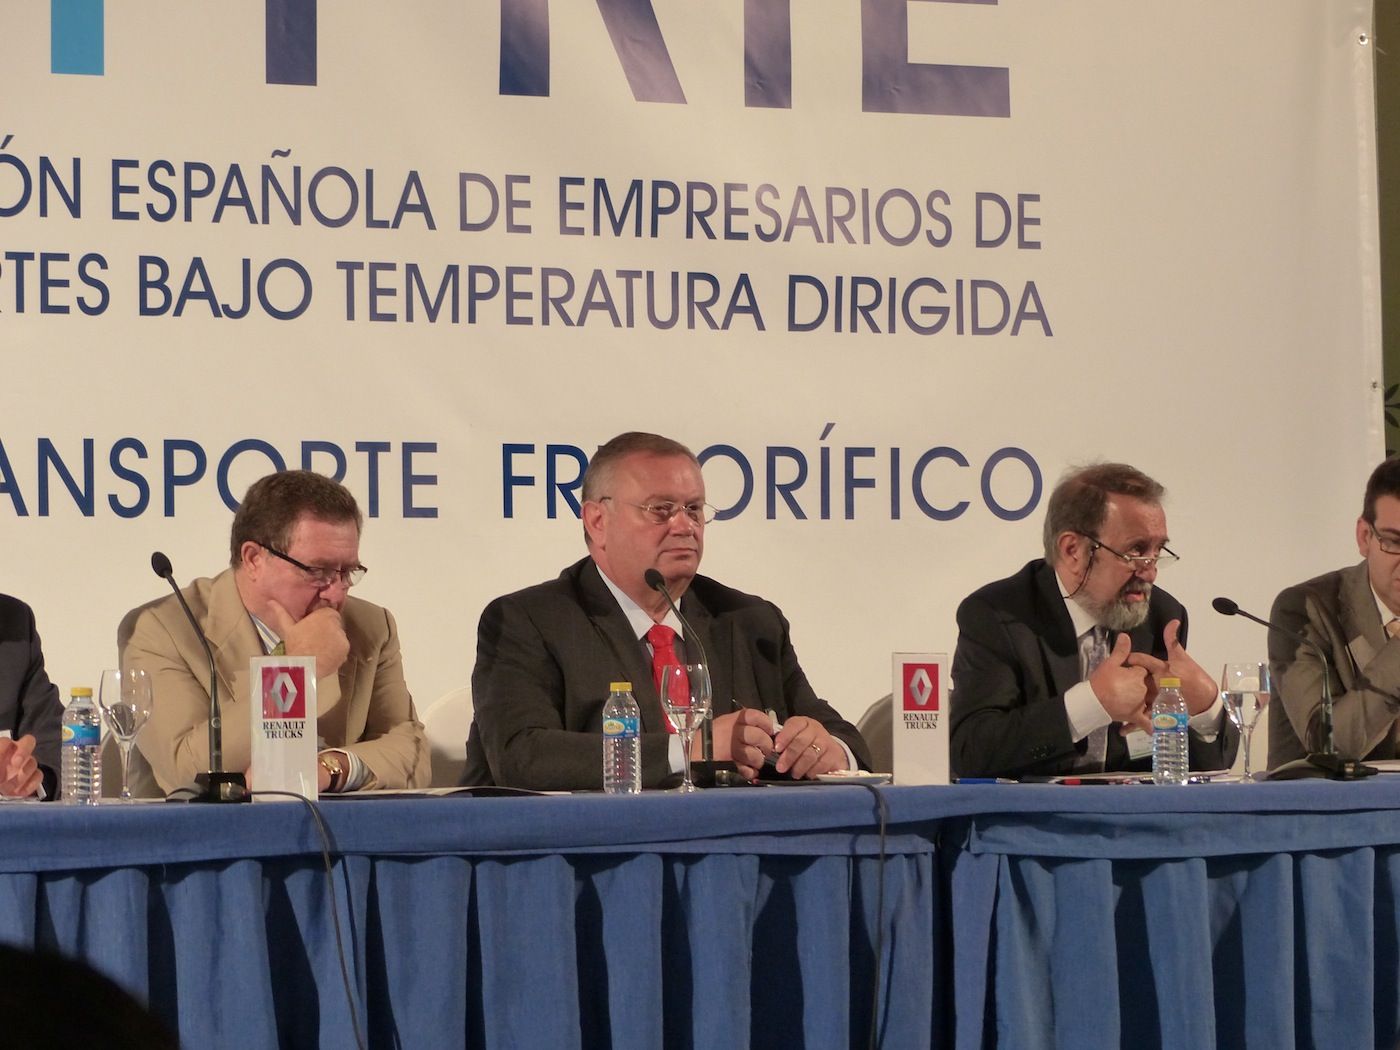 II congreso de Atfrie 2013 celebrado en El Puig